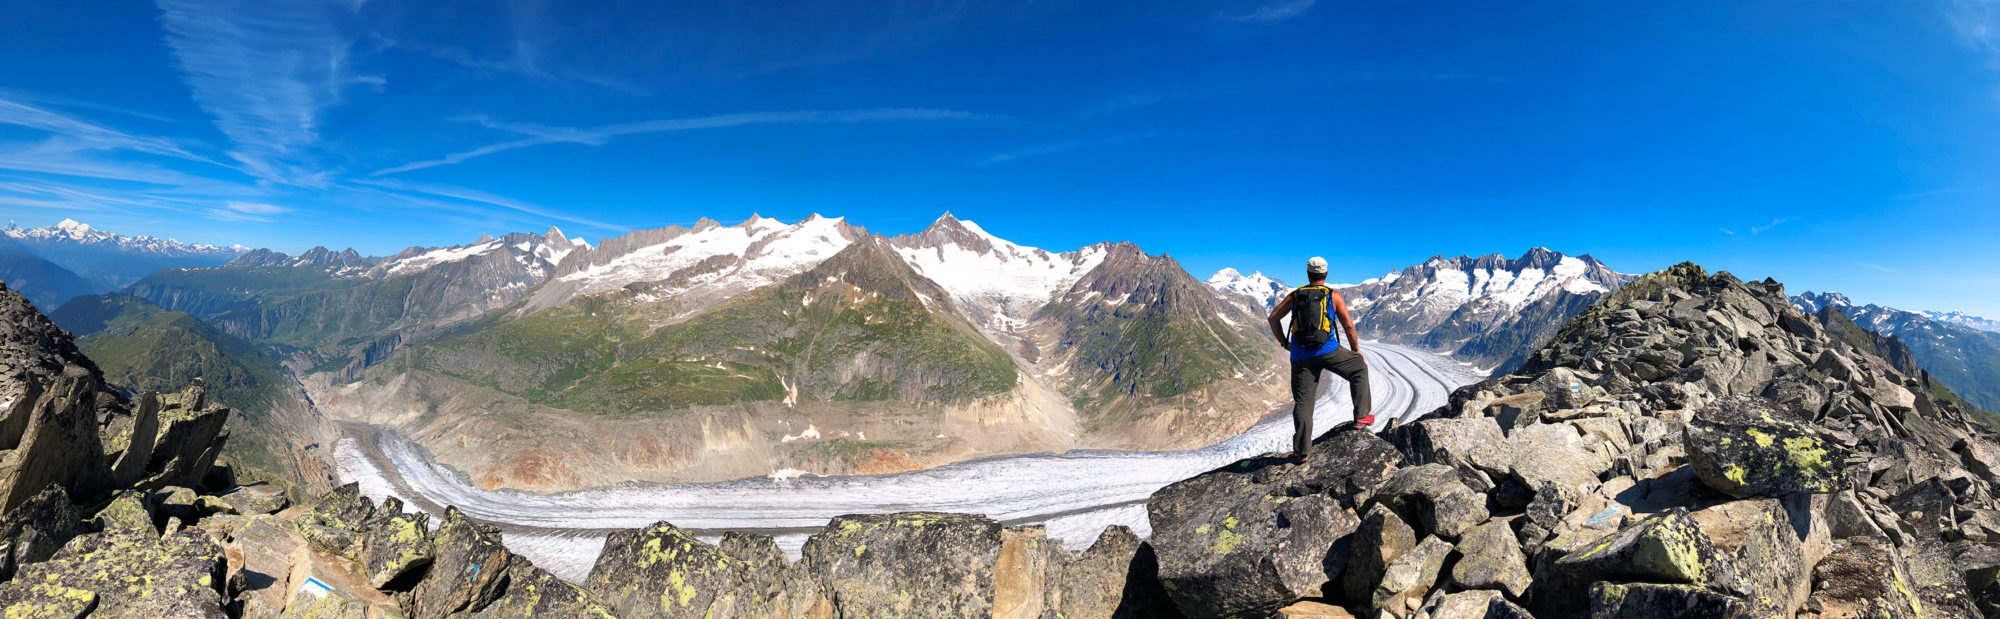 The Great Aletsch Glacier Switzerland / Der Grosse Aletschgletscher, Schweiz